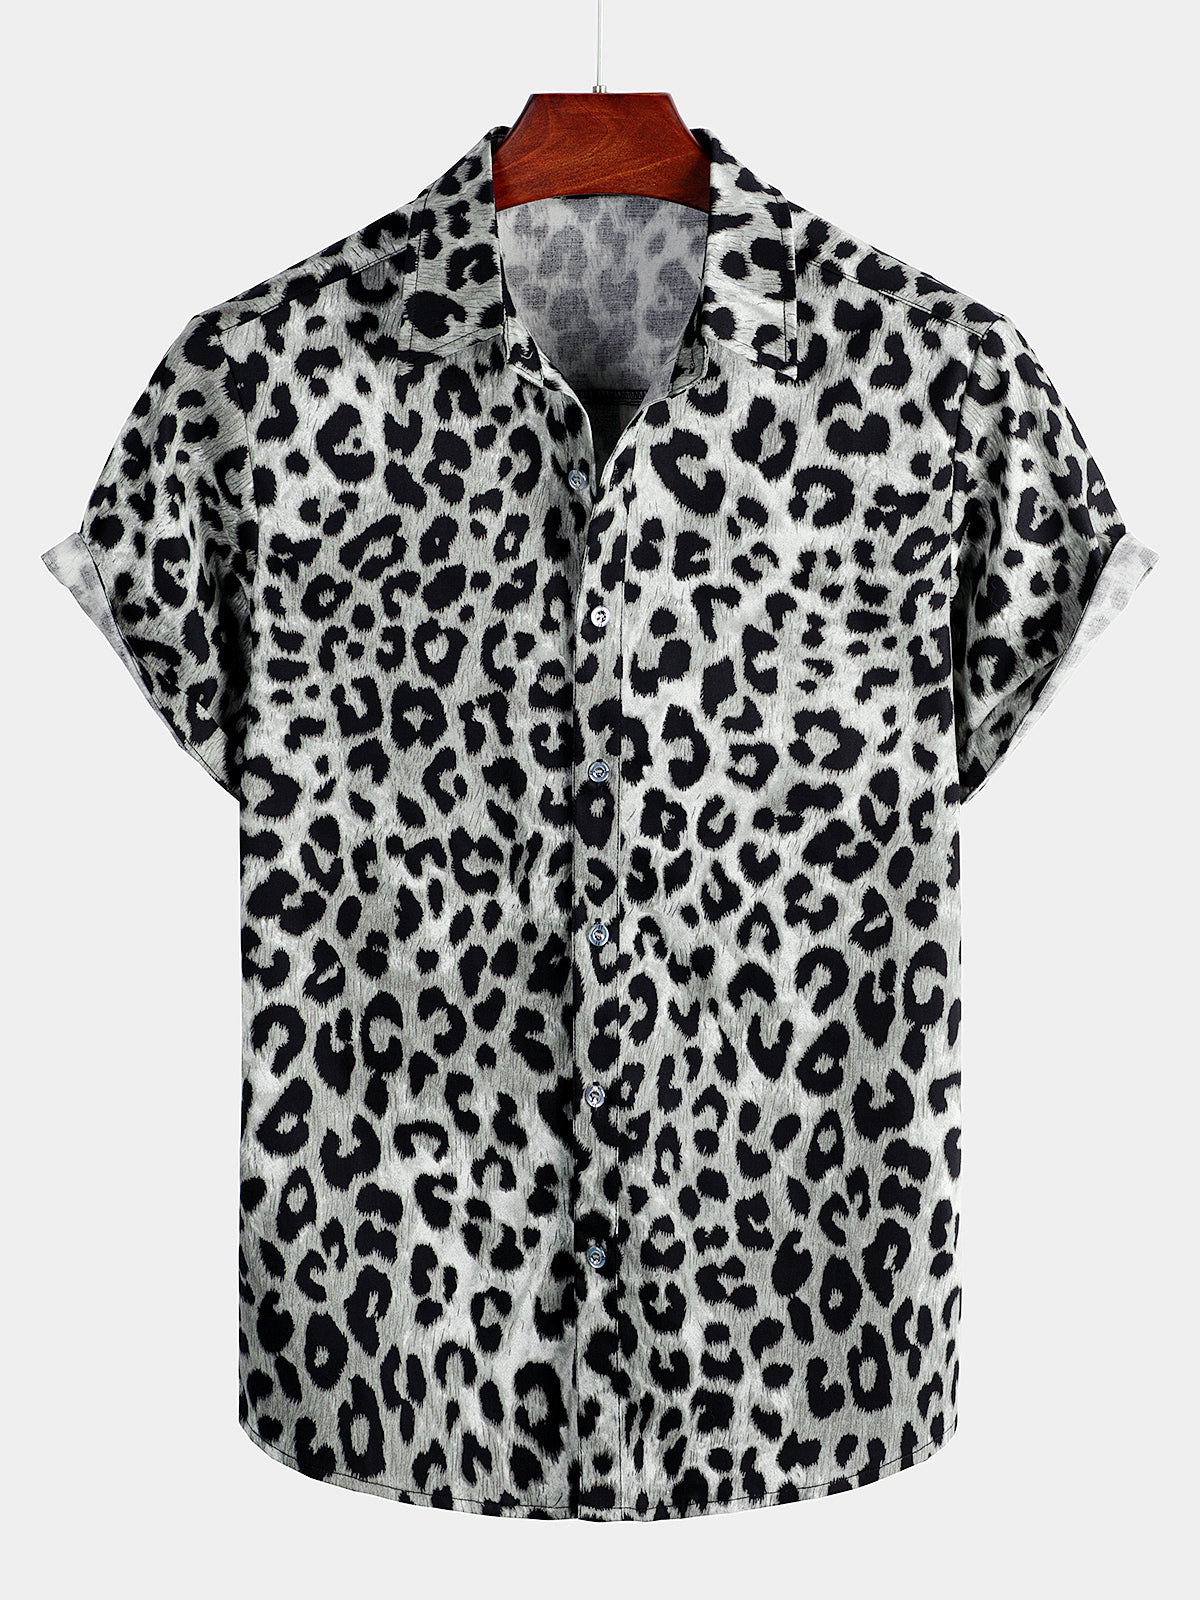 Mens Cotton Casual Leopard-Print Short Sleeve Shirt Hawaiian Shirt for Men Women